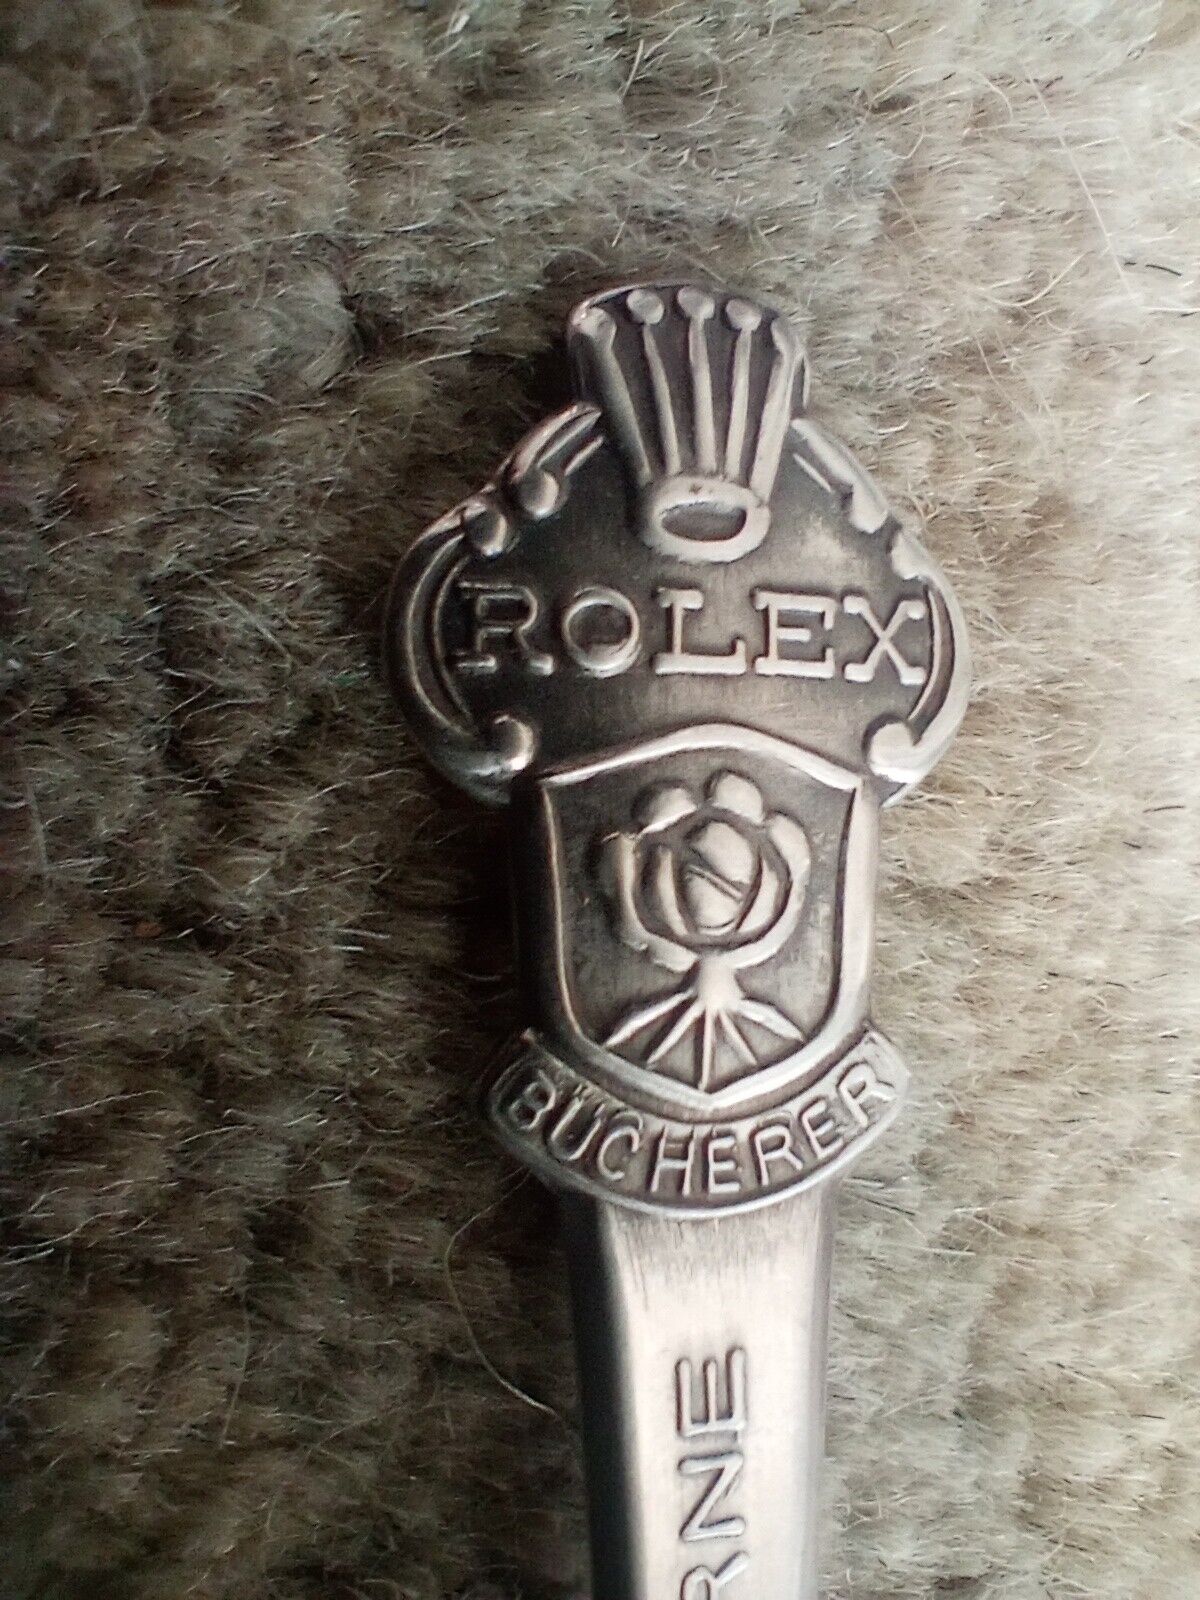 Vintage ROLEX Souvenir Collector Spoon Bucherer of Switzerland Lucerne 1 Spoon